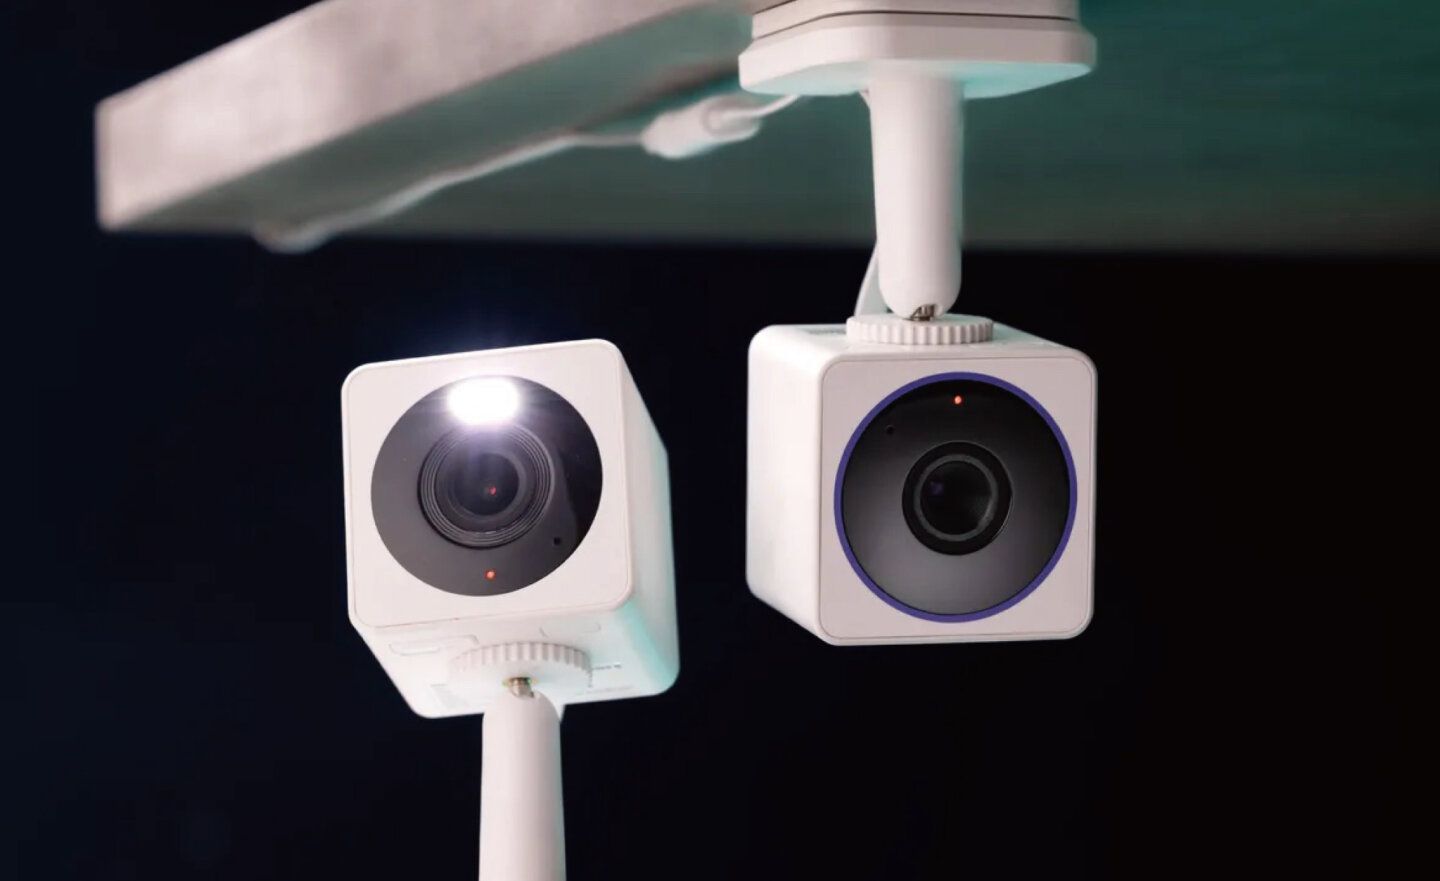 Wyze 網路攝影機再現安全漏洞，使用者意外看到陌生人的家裡情況